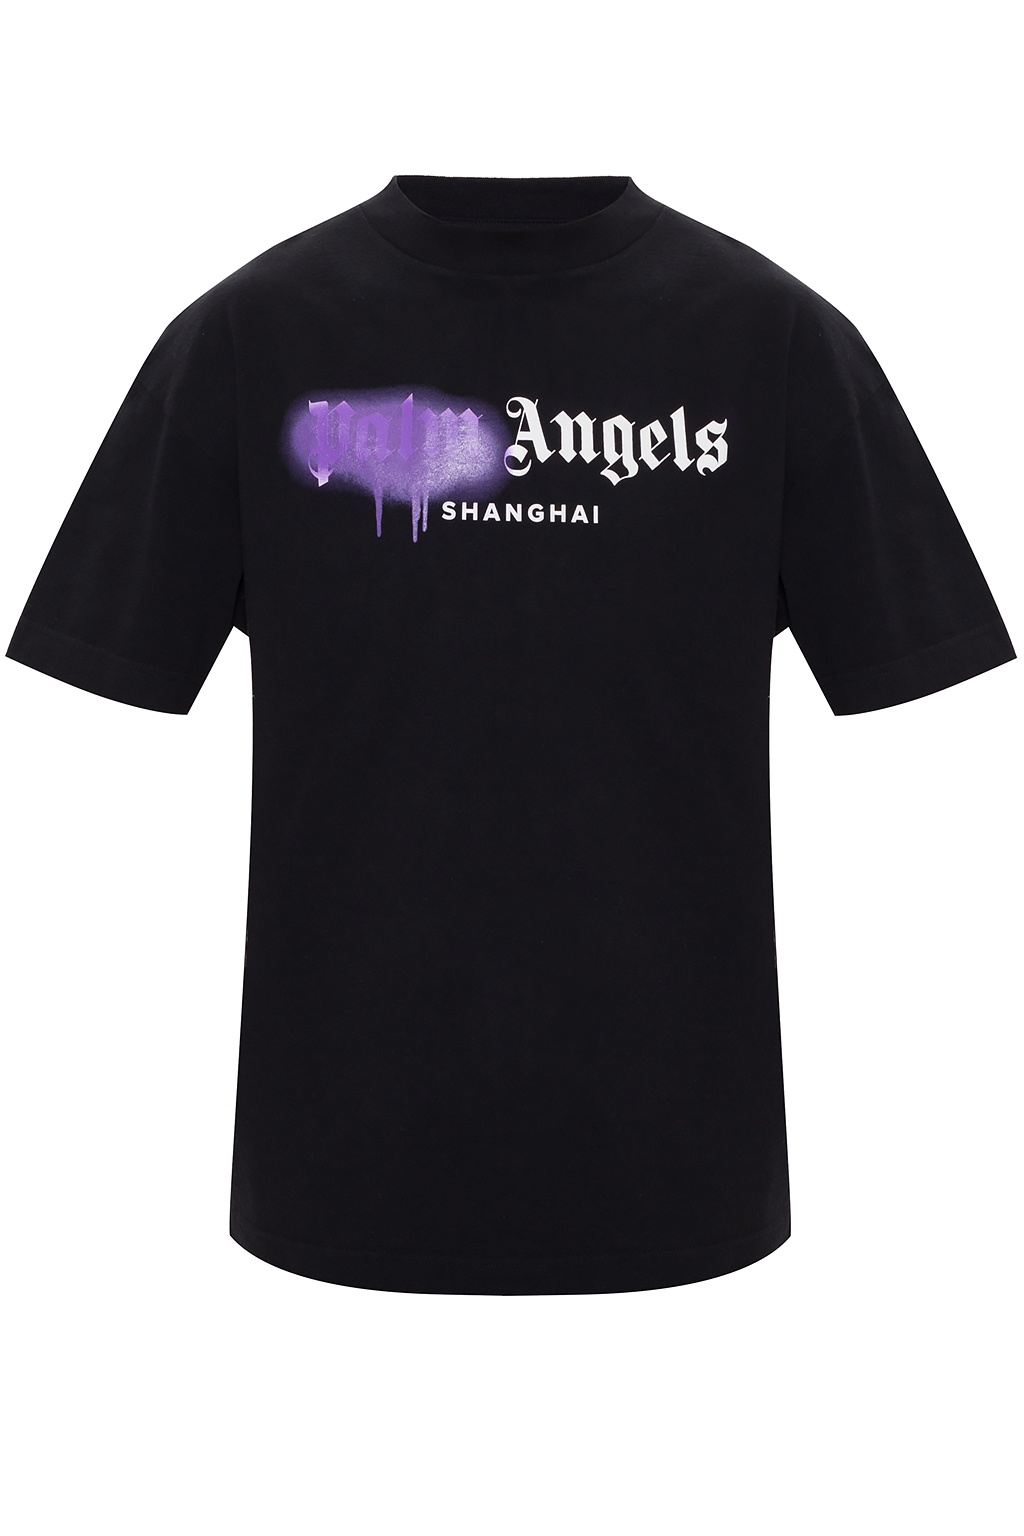 palm angels shanghai t shirt black